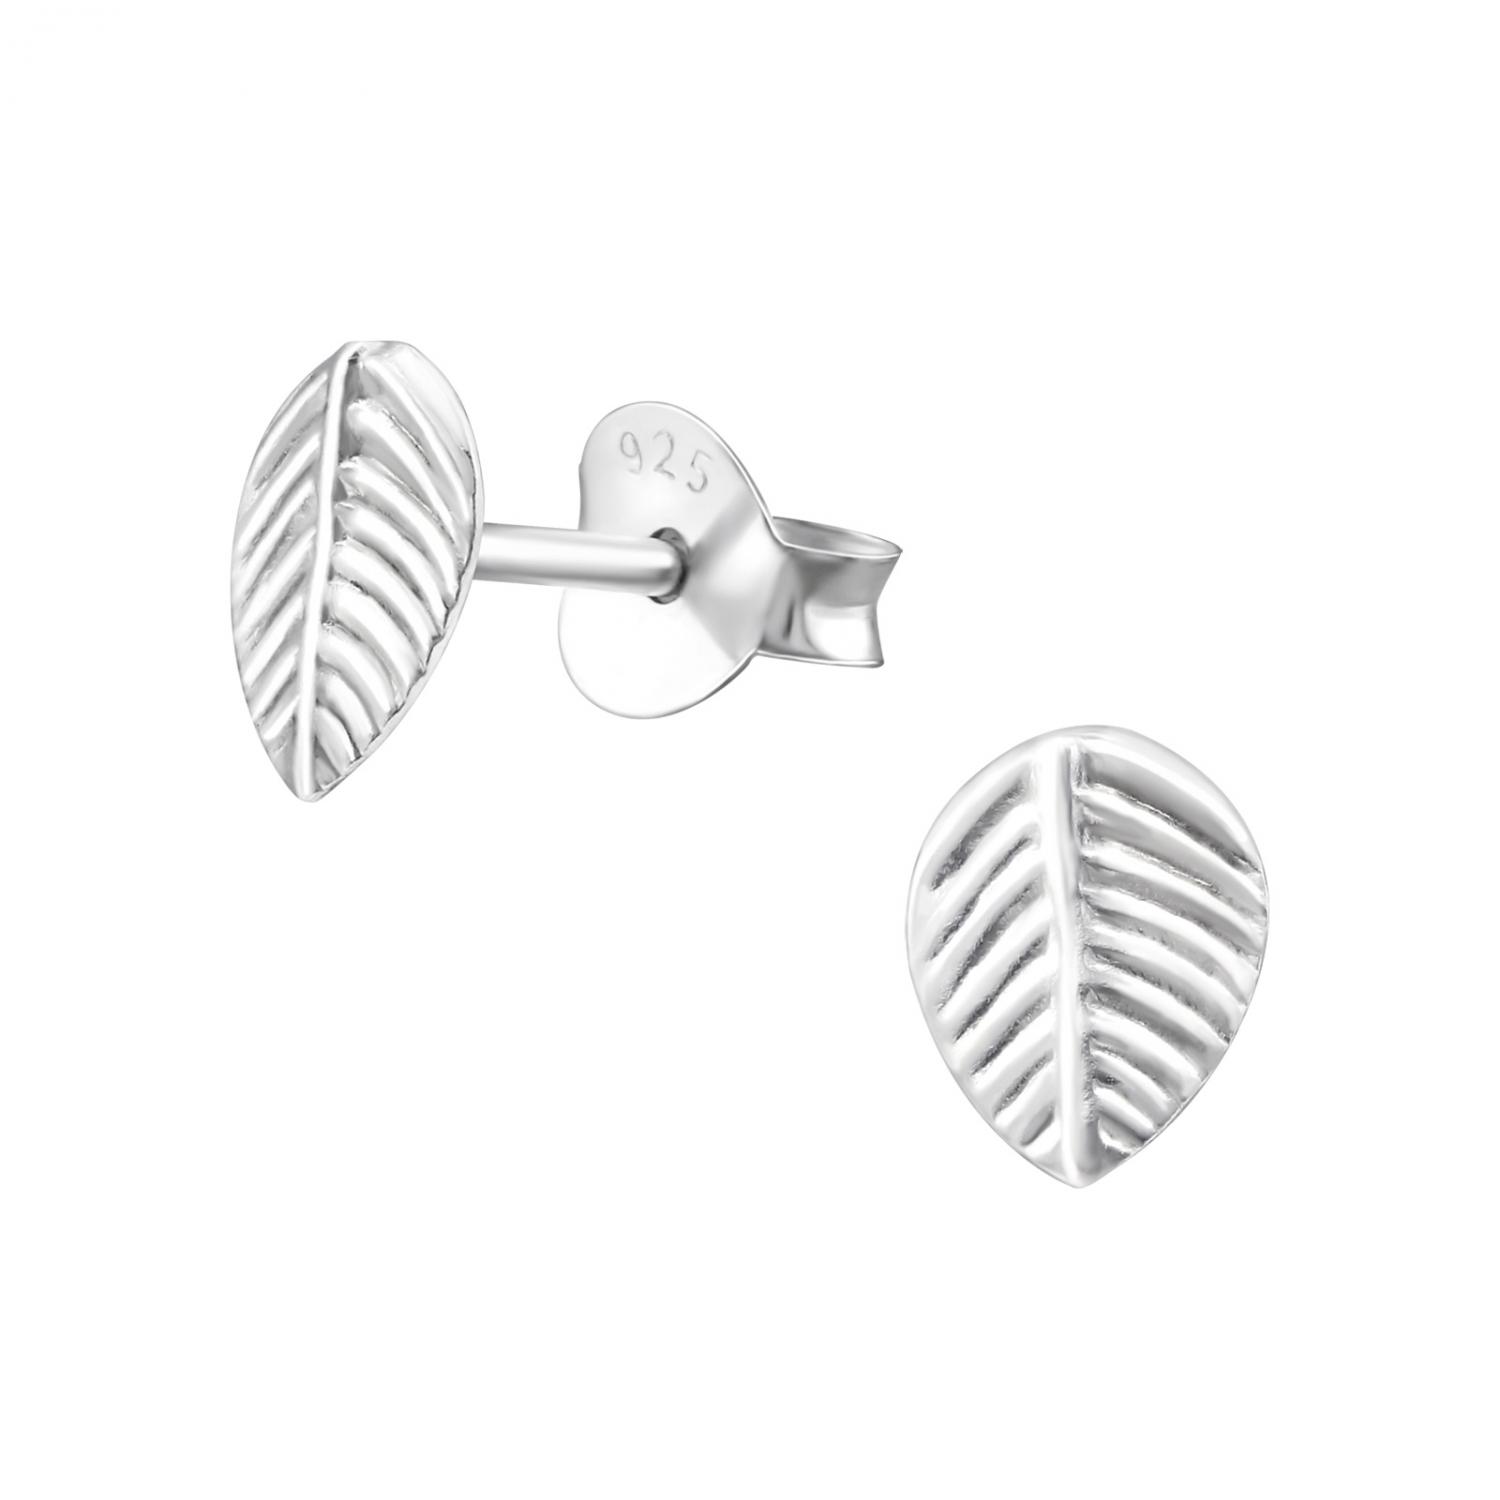 Löv - Studs - Örhängen i äkta silver